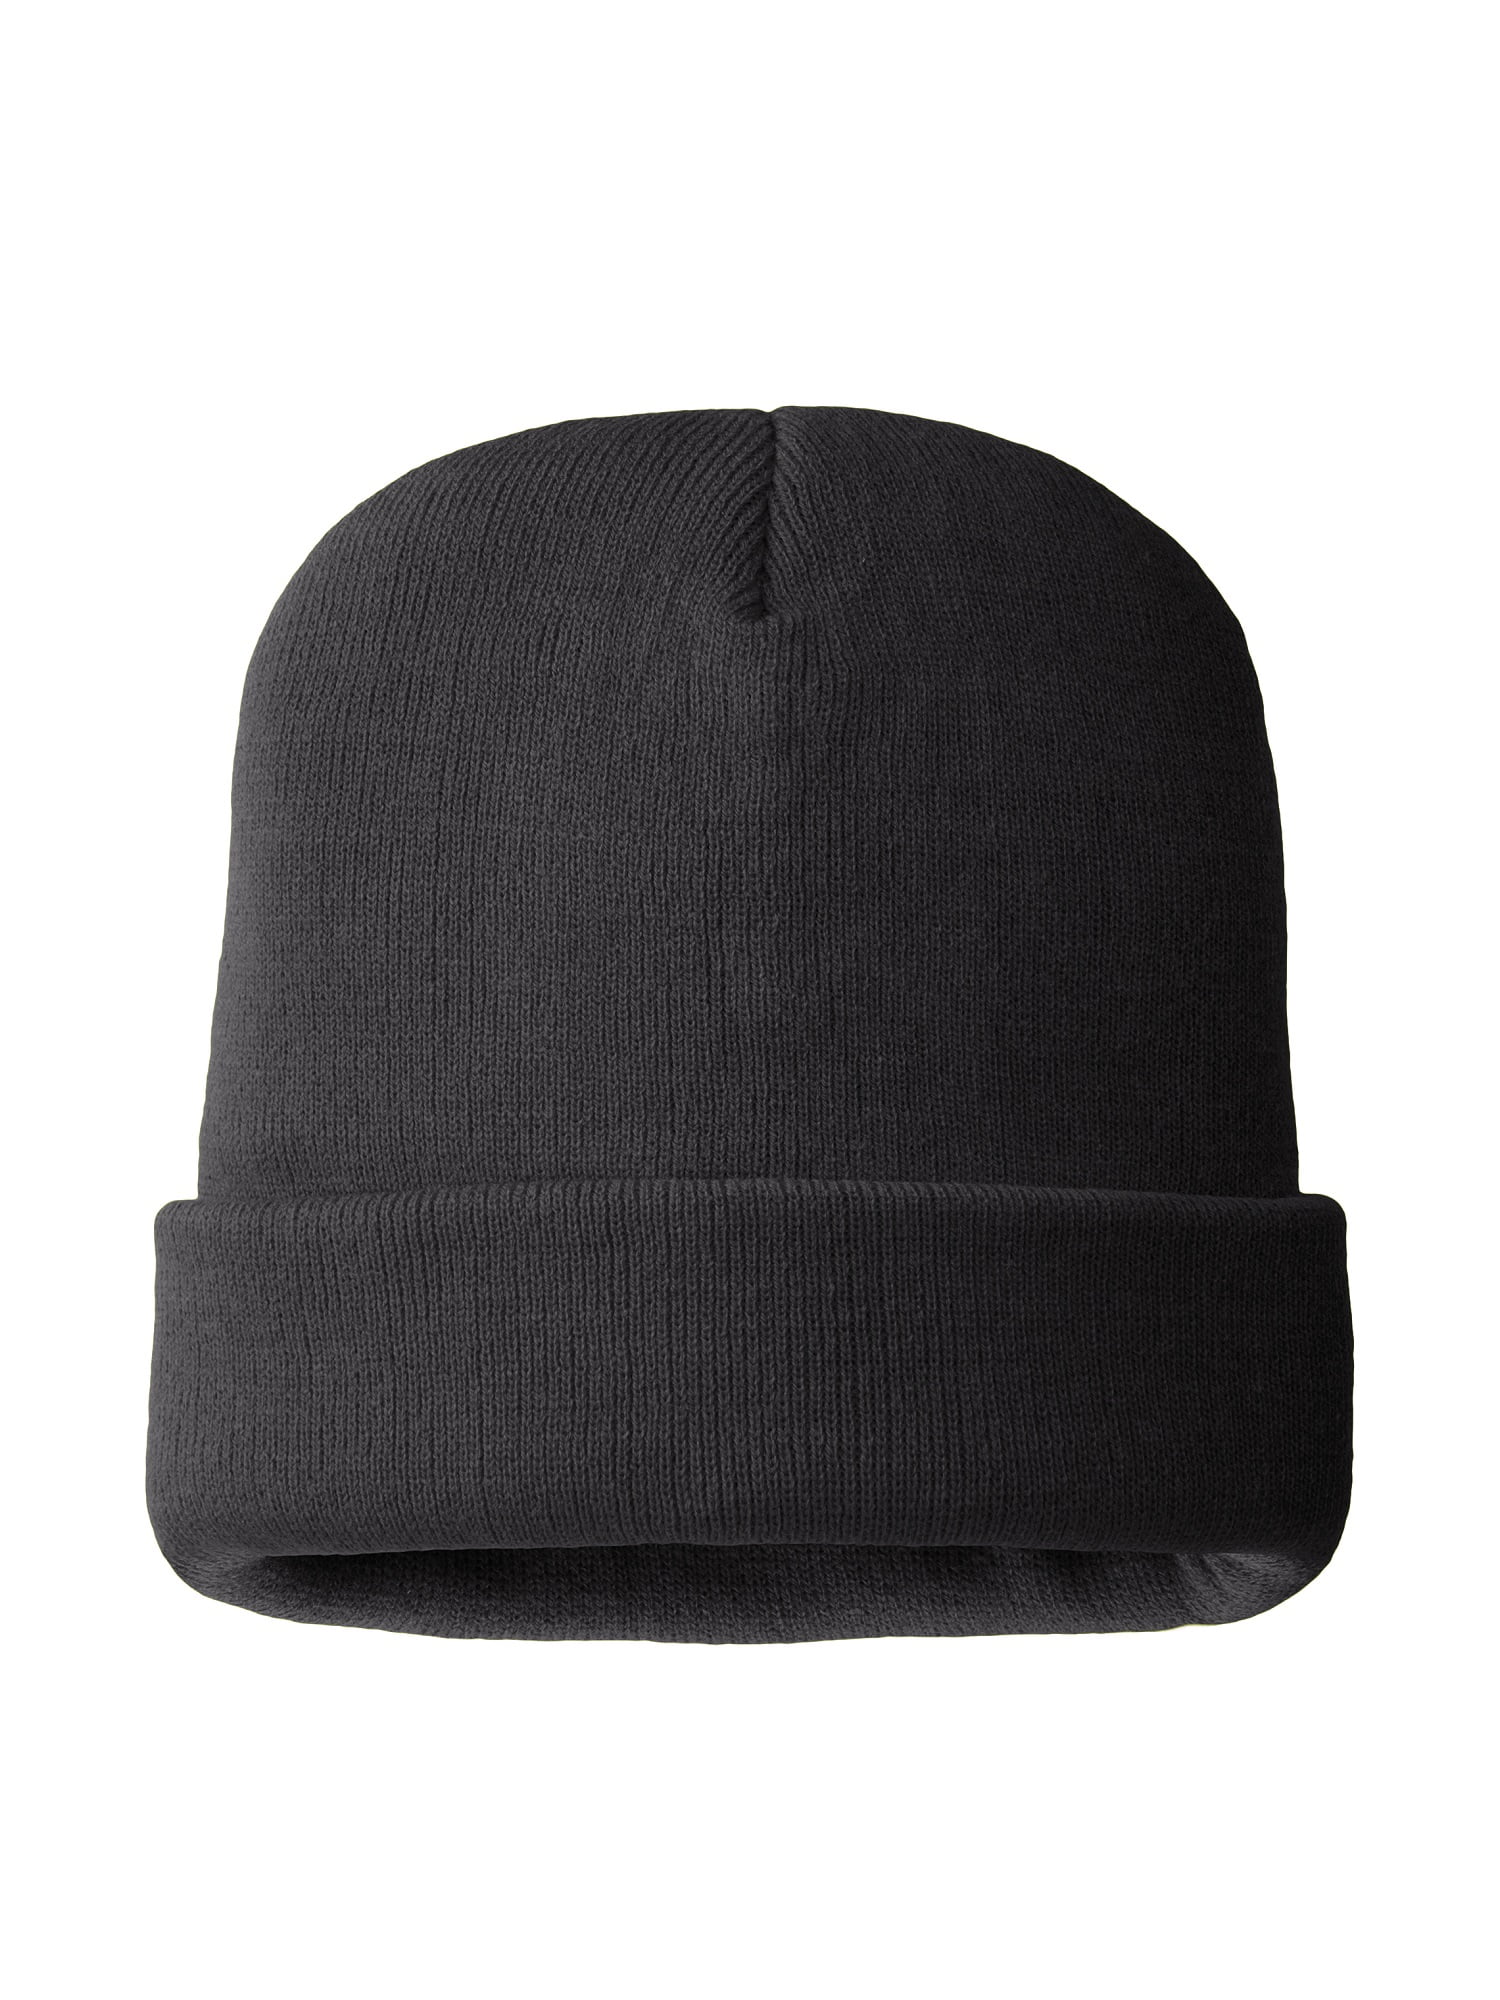 3 Designs TP828 Trespass Mens Aneth Casual Fashion Winter Warm Beanie Hat 